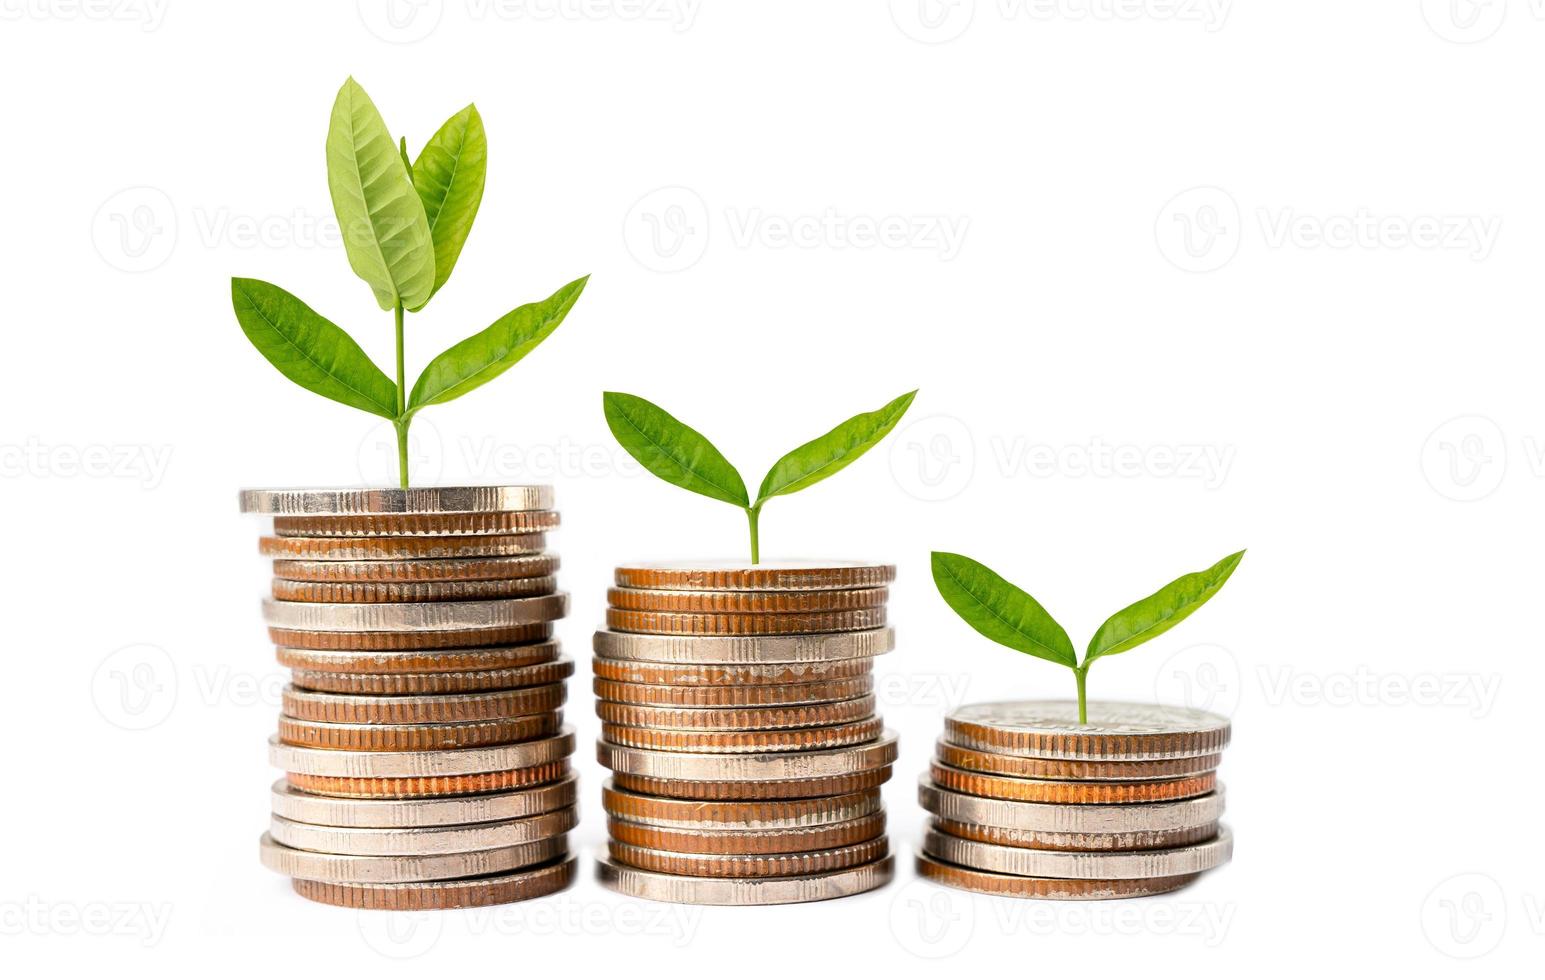 folha de árvore em moedas de economia de dinheiro, finanças de negócios economizando conceito de investimento bancário. foto